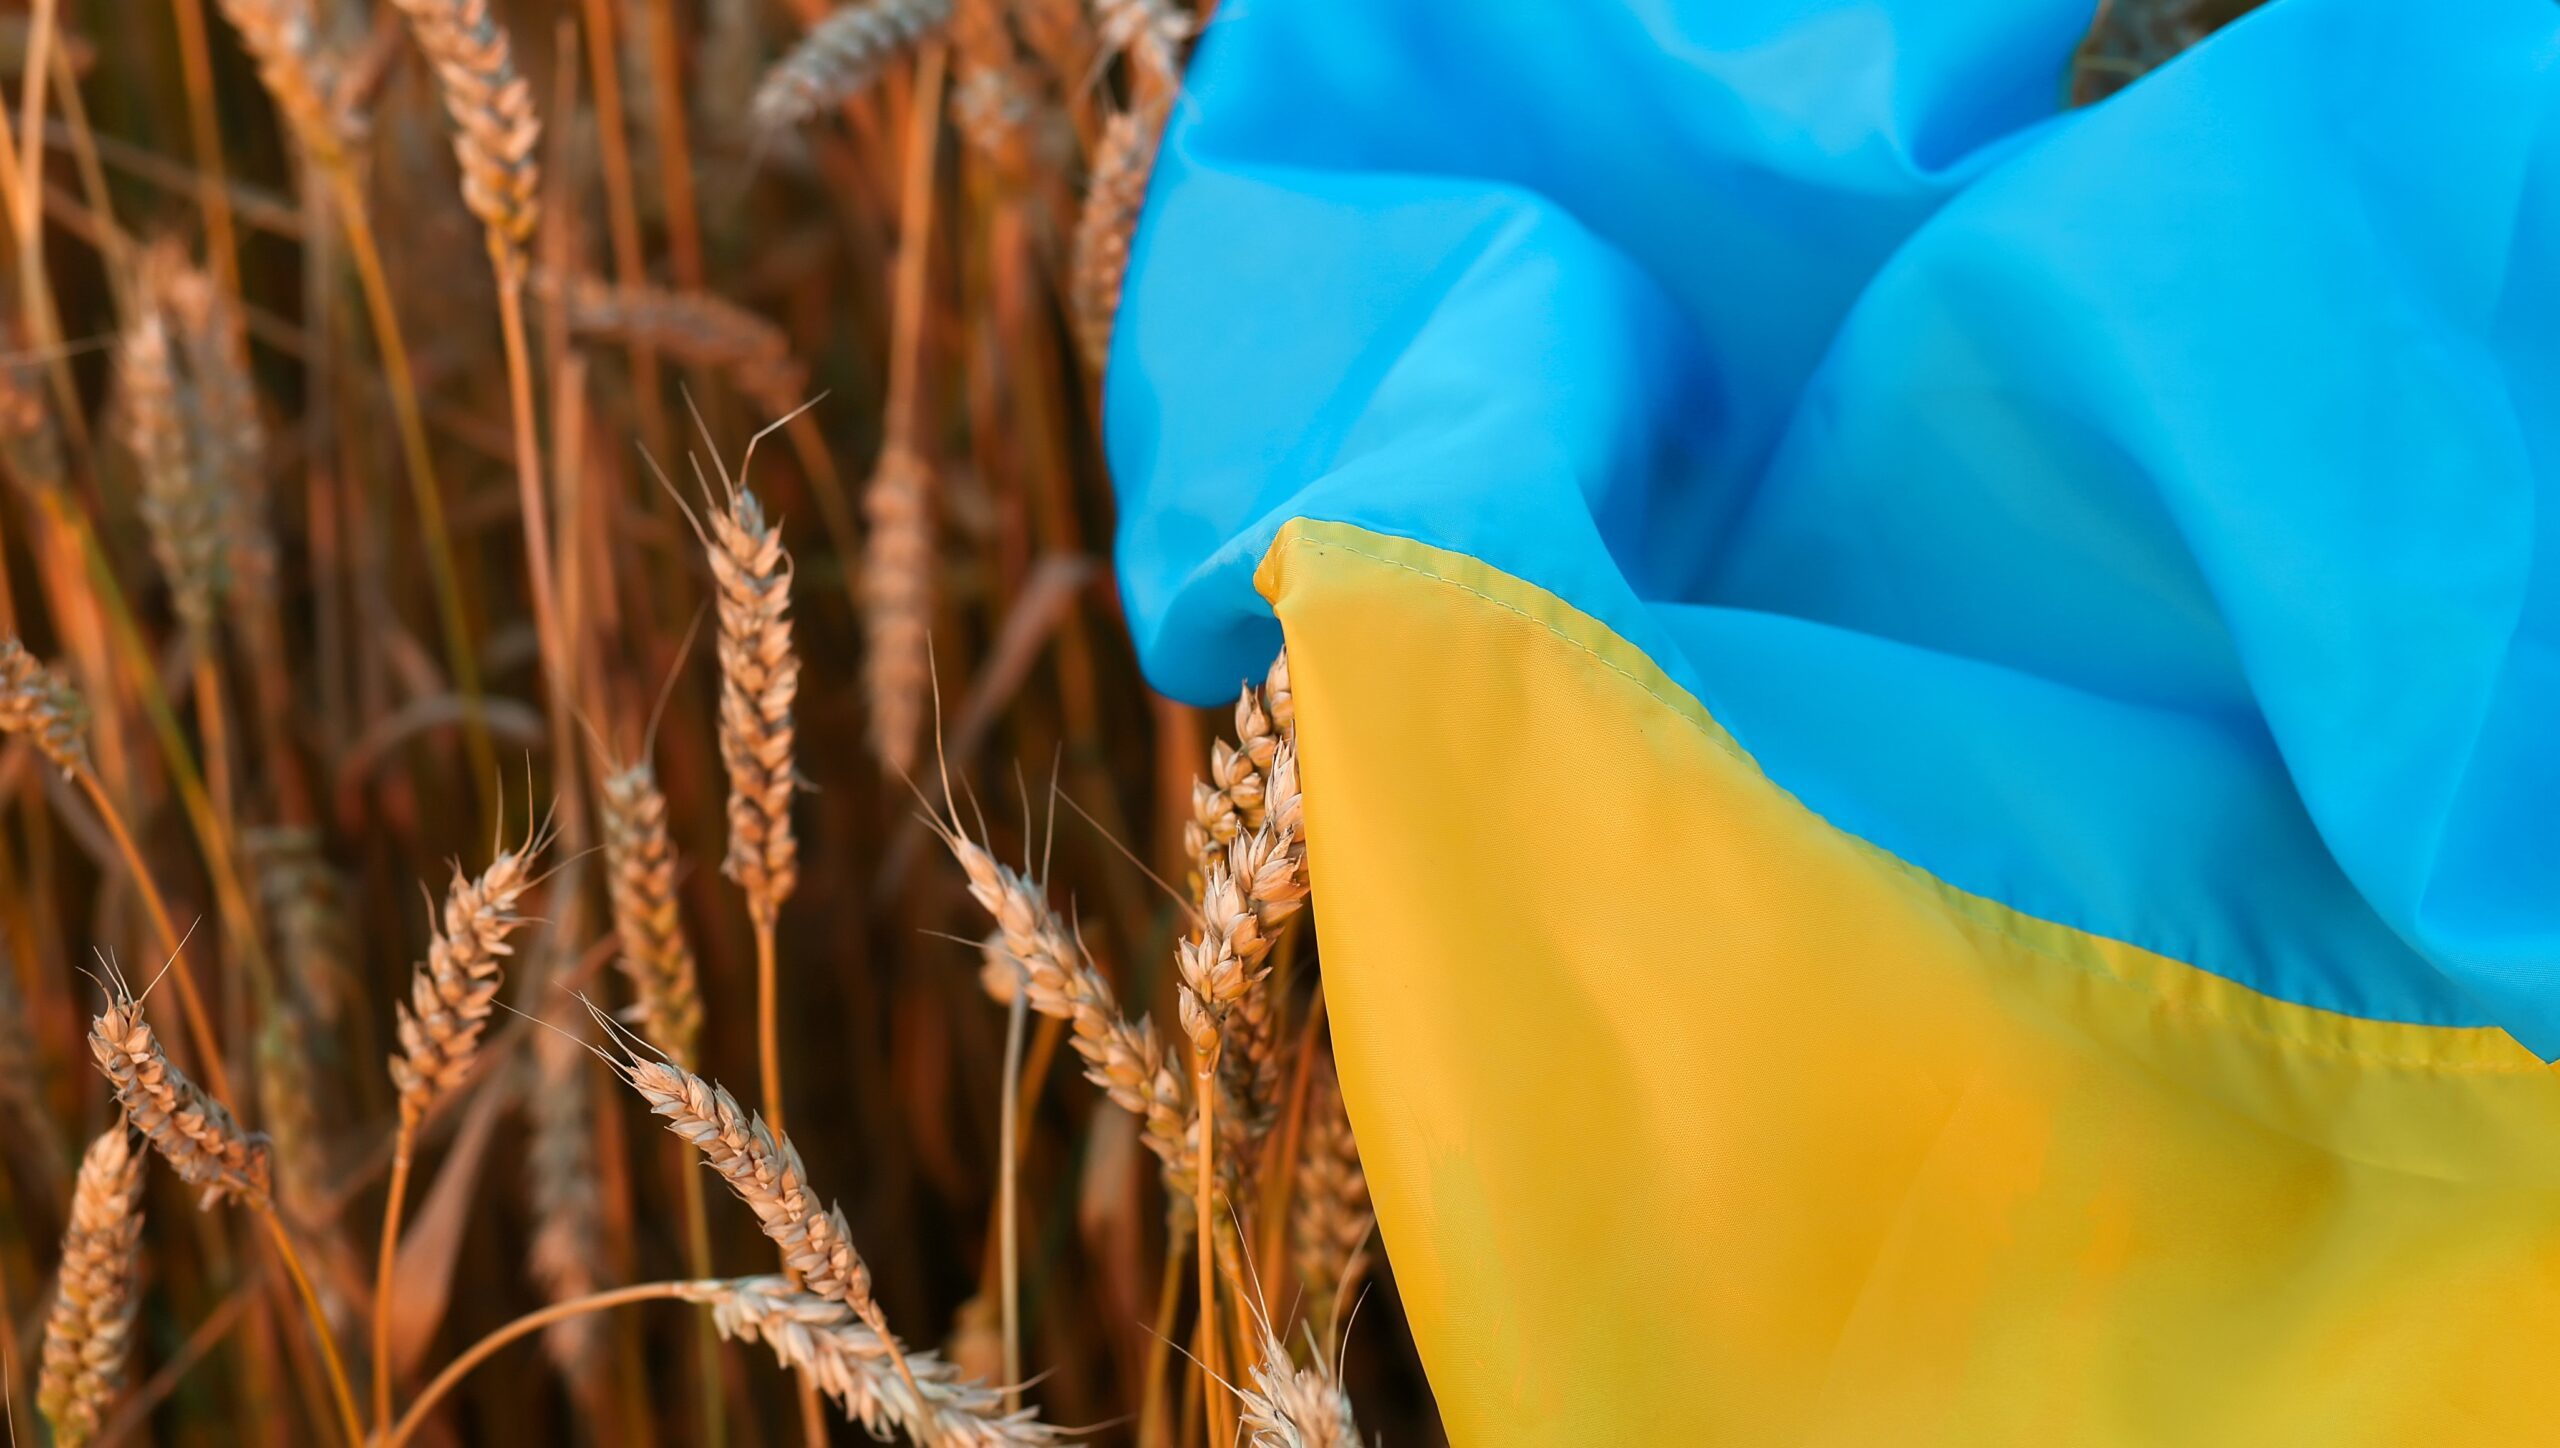 Ministerul Agriculturii propune instituirea unor măsuri de reglementare a importurilor de produse agricole din Ucraina sau Republica Moldova / Sunt vizate gâul, porumbul, seminţele de rapiţă sau de rapiţă sălbatică şi seminţele de floarea-soarelui